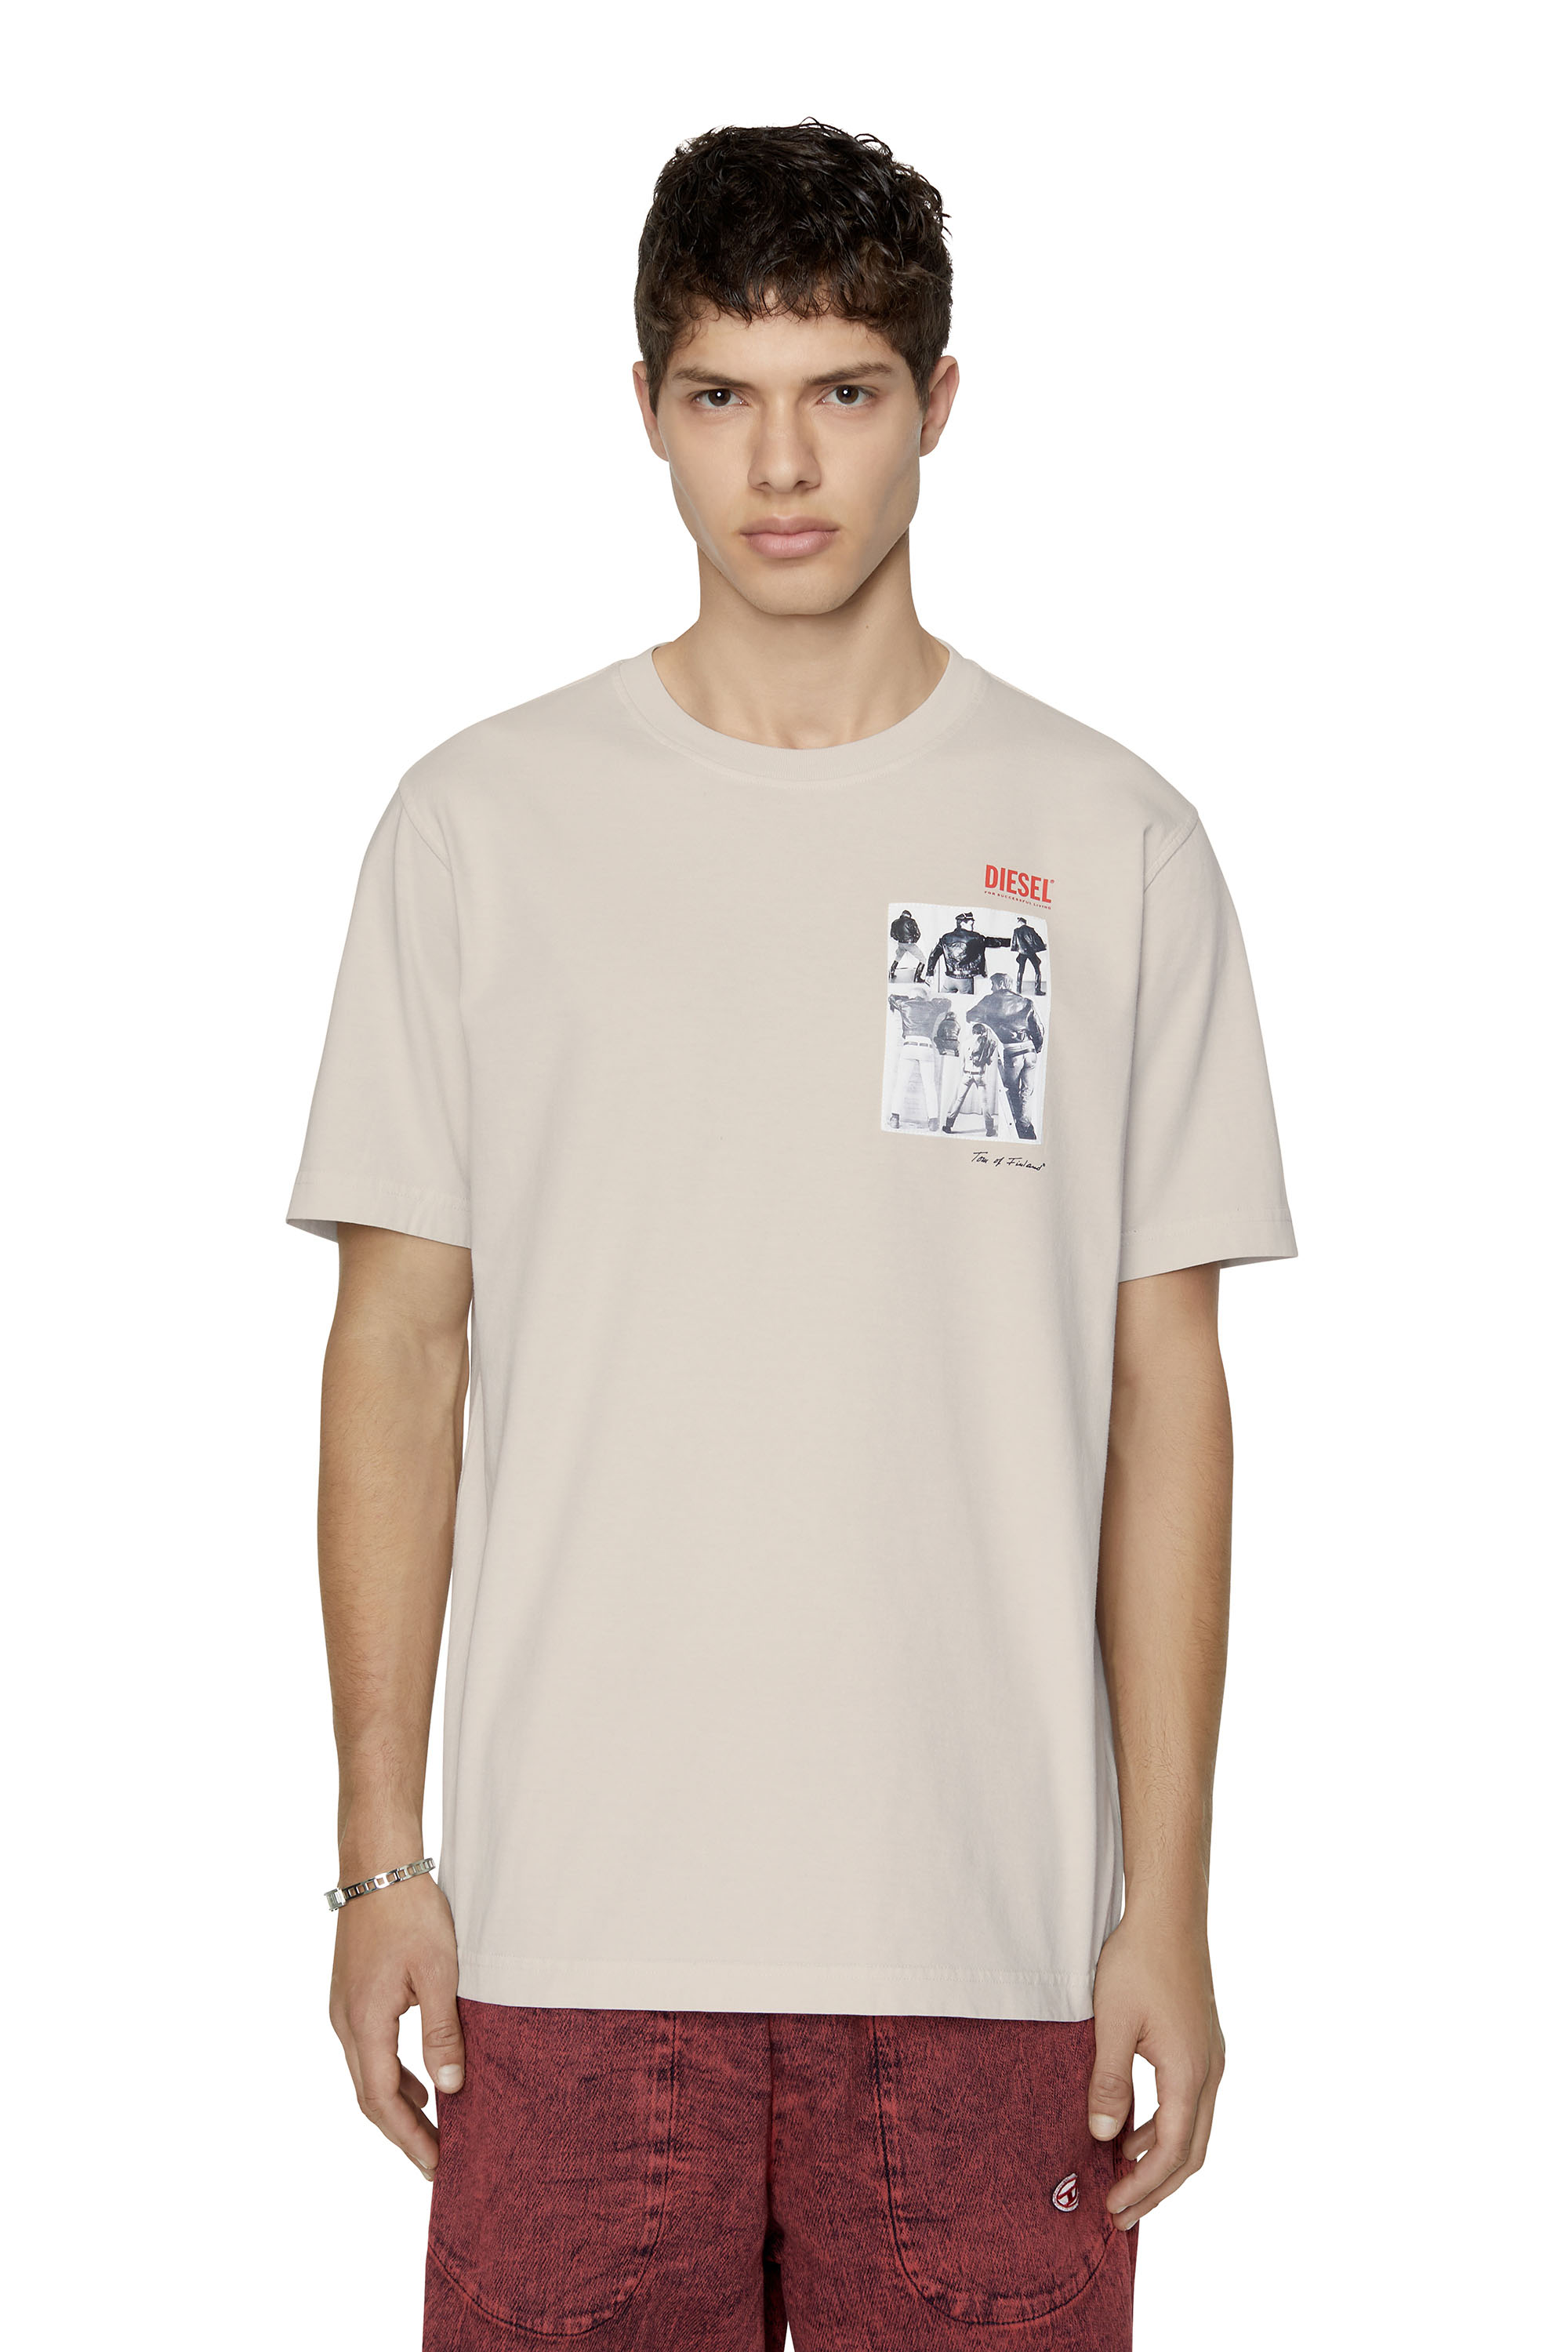 Men's T-shirts: Round Nek, V-Nek | Shop on Diesel.com